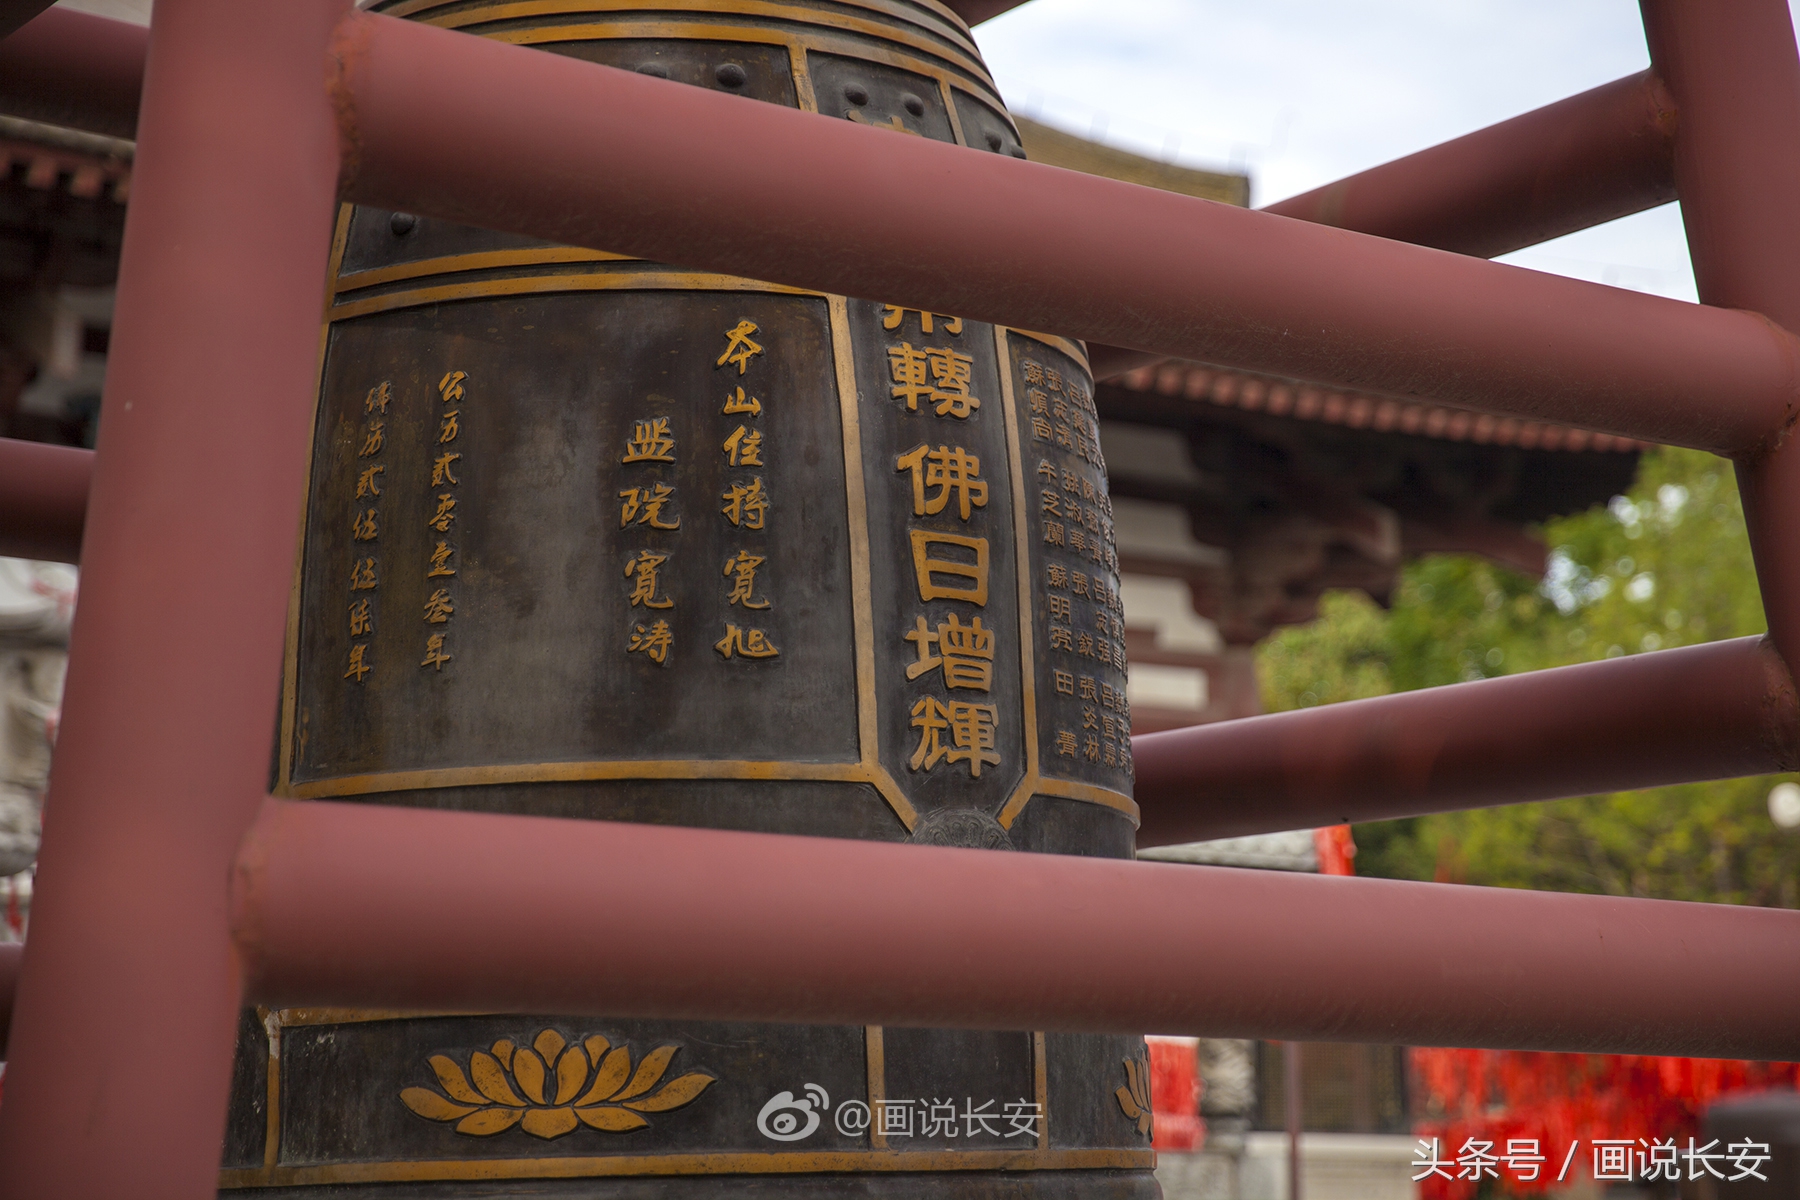 中国佛教八大宗派之一密宗祖庭-青龙寺